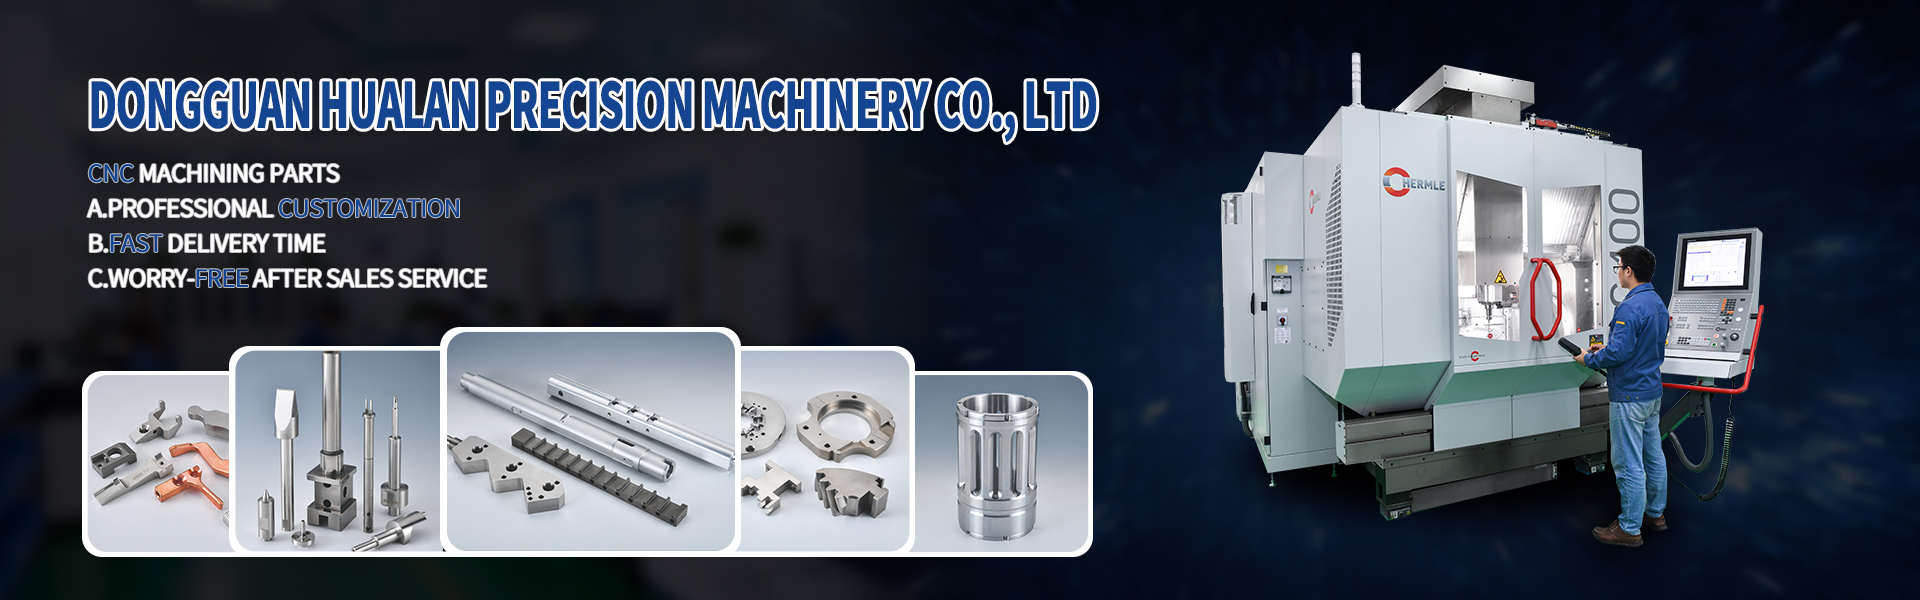 أجزاء التصنيع باستخدام الحاسب الآلي، تورينج و طحن، قطع الخط,Dongguan Hualan Precision Machinery Co., LTD